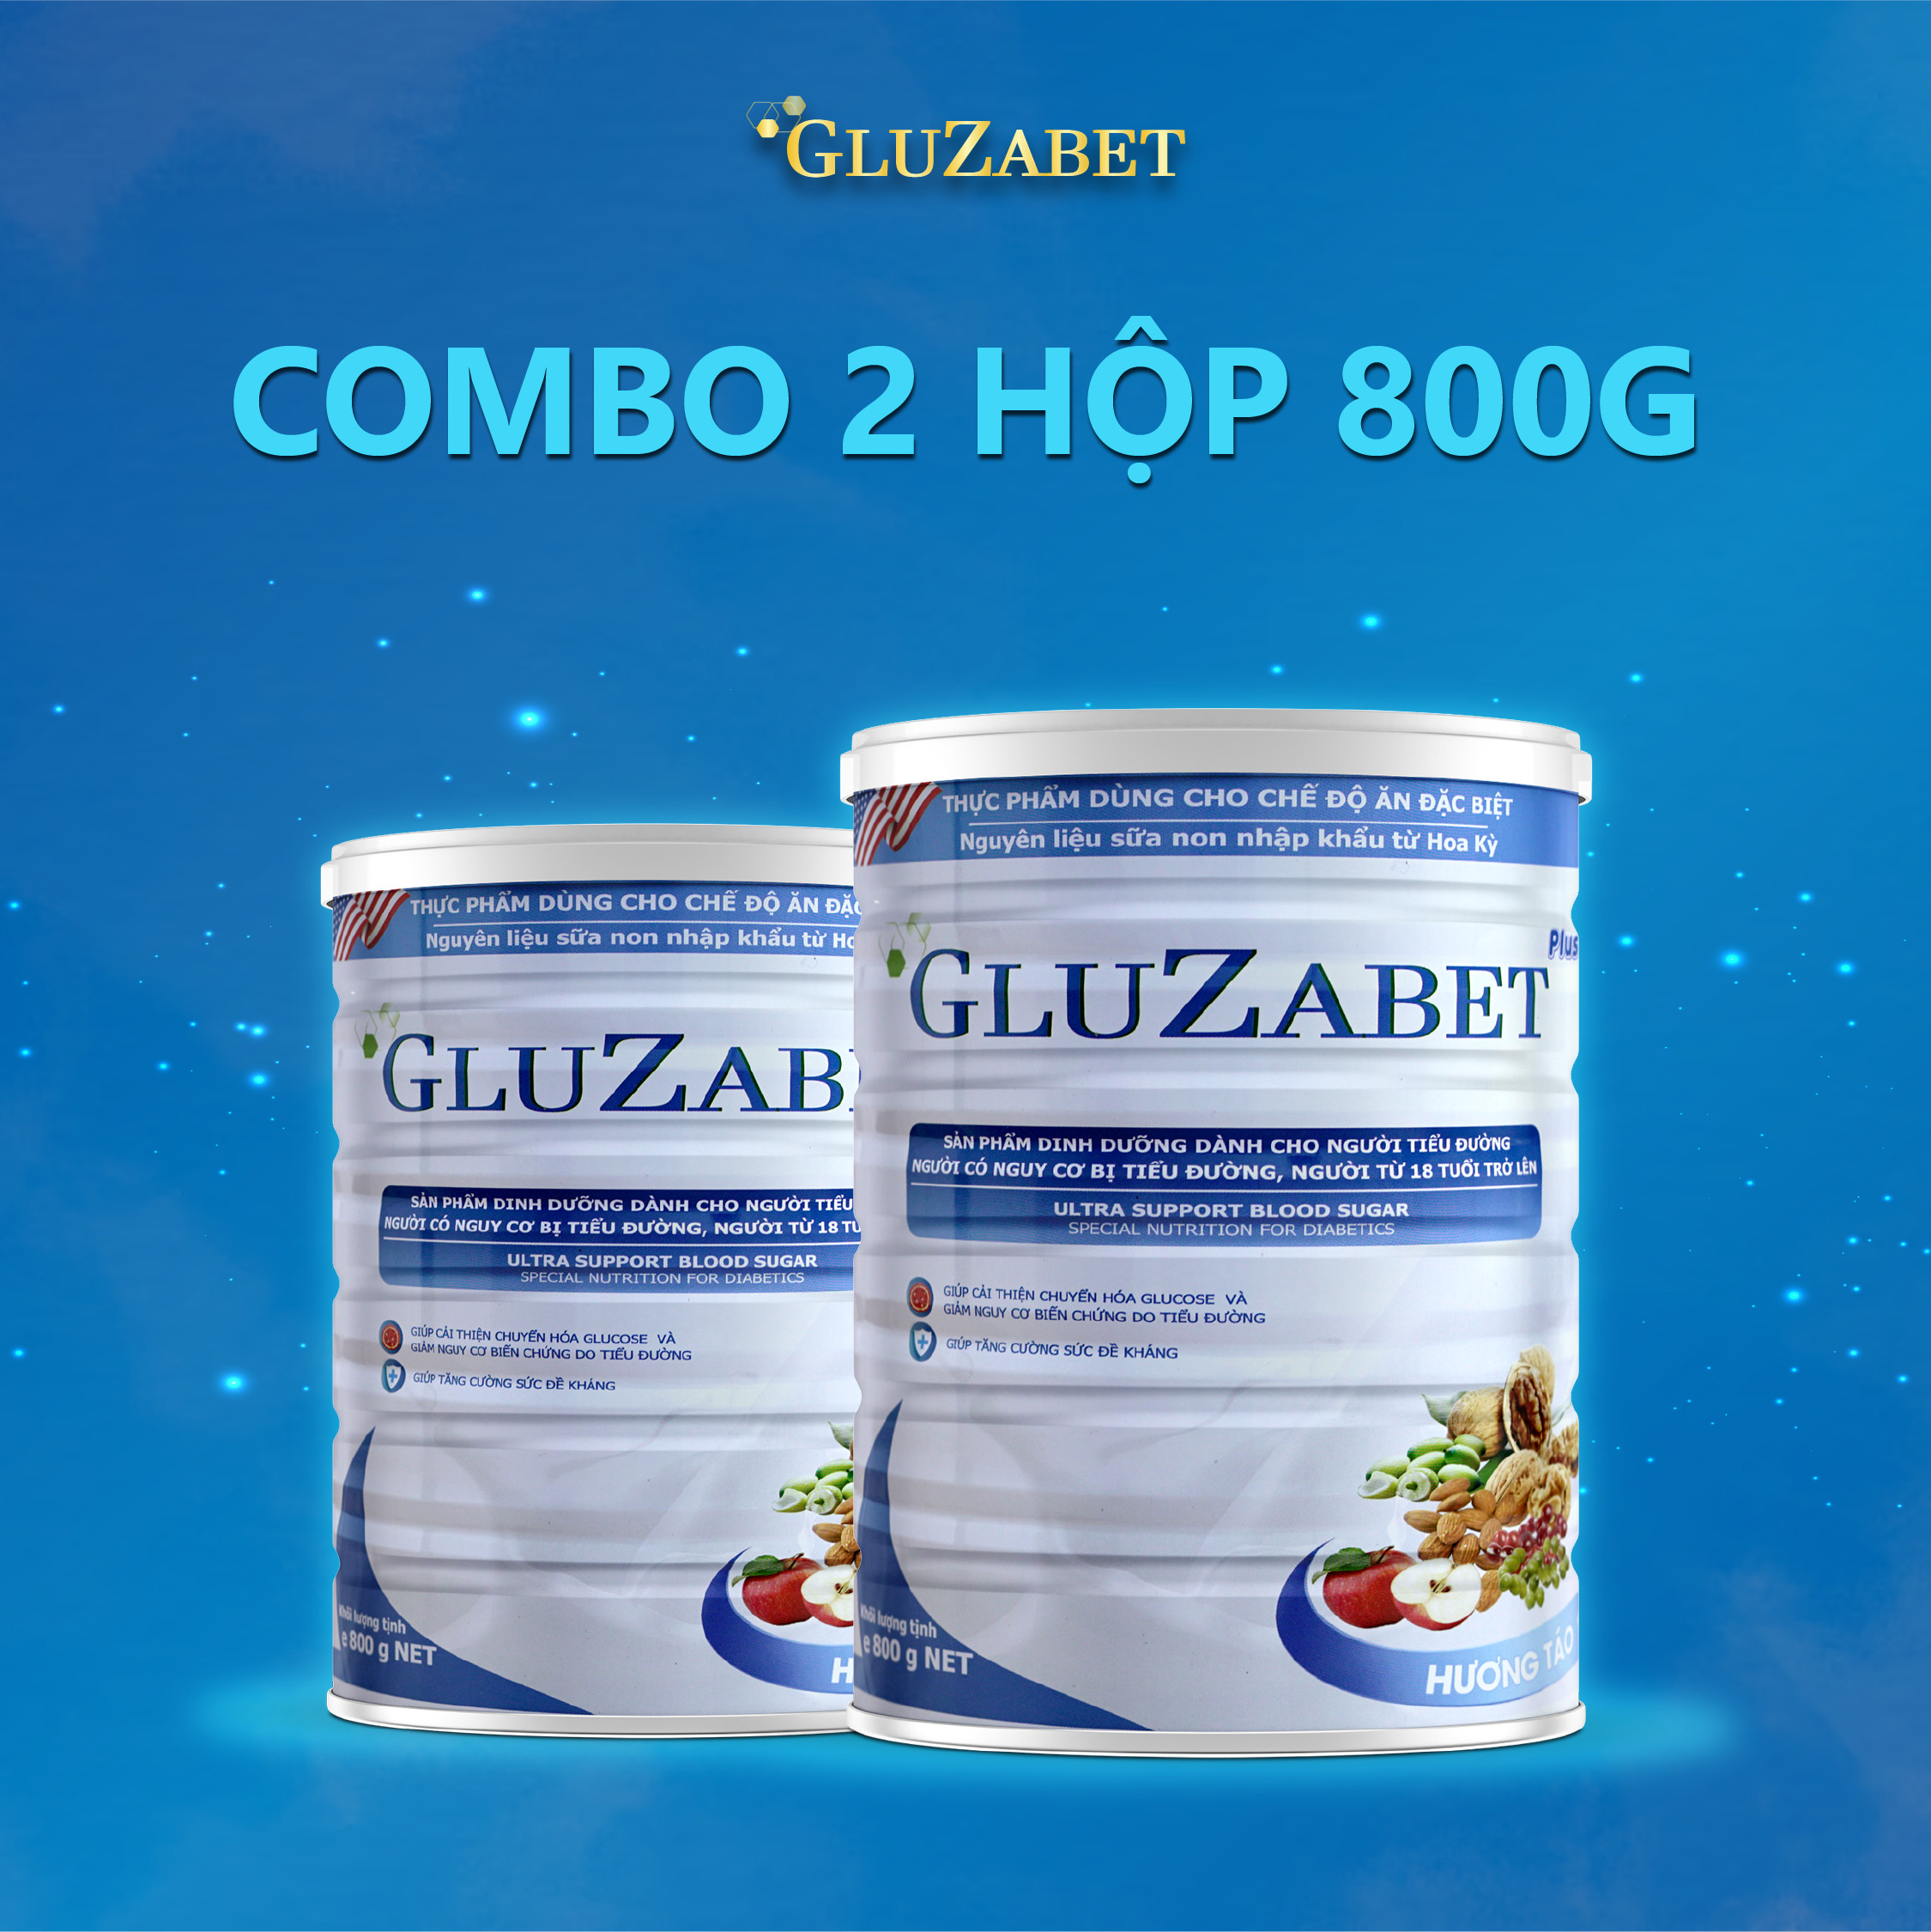 Combo 2 hộp 800g - Sữa hạt dinh dưỡng cho người tiểu đường Gluzabet giúp